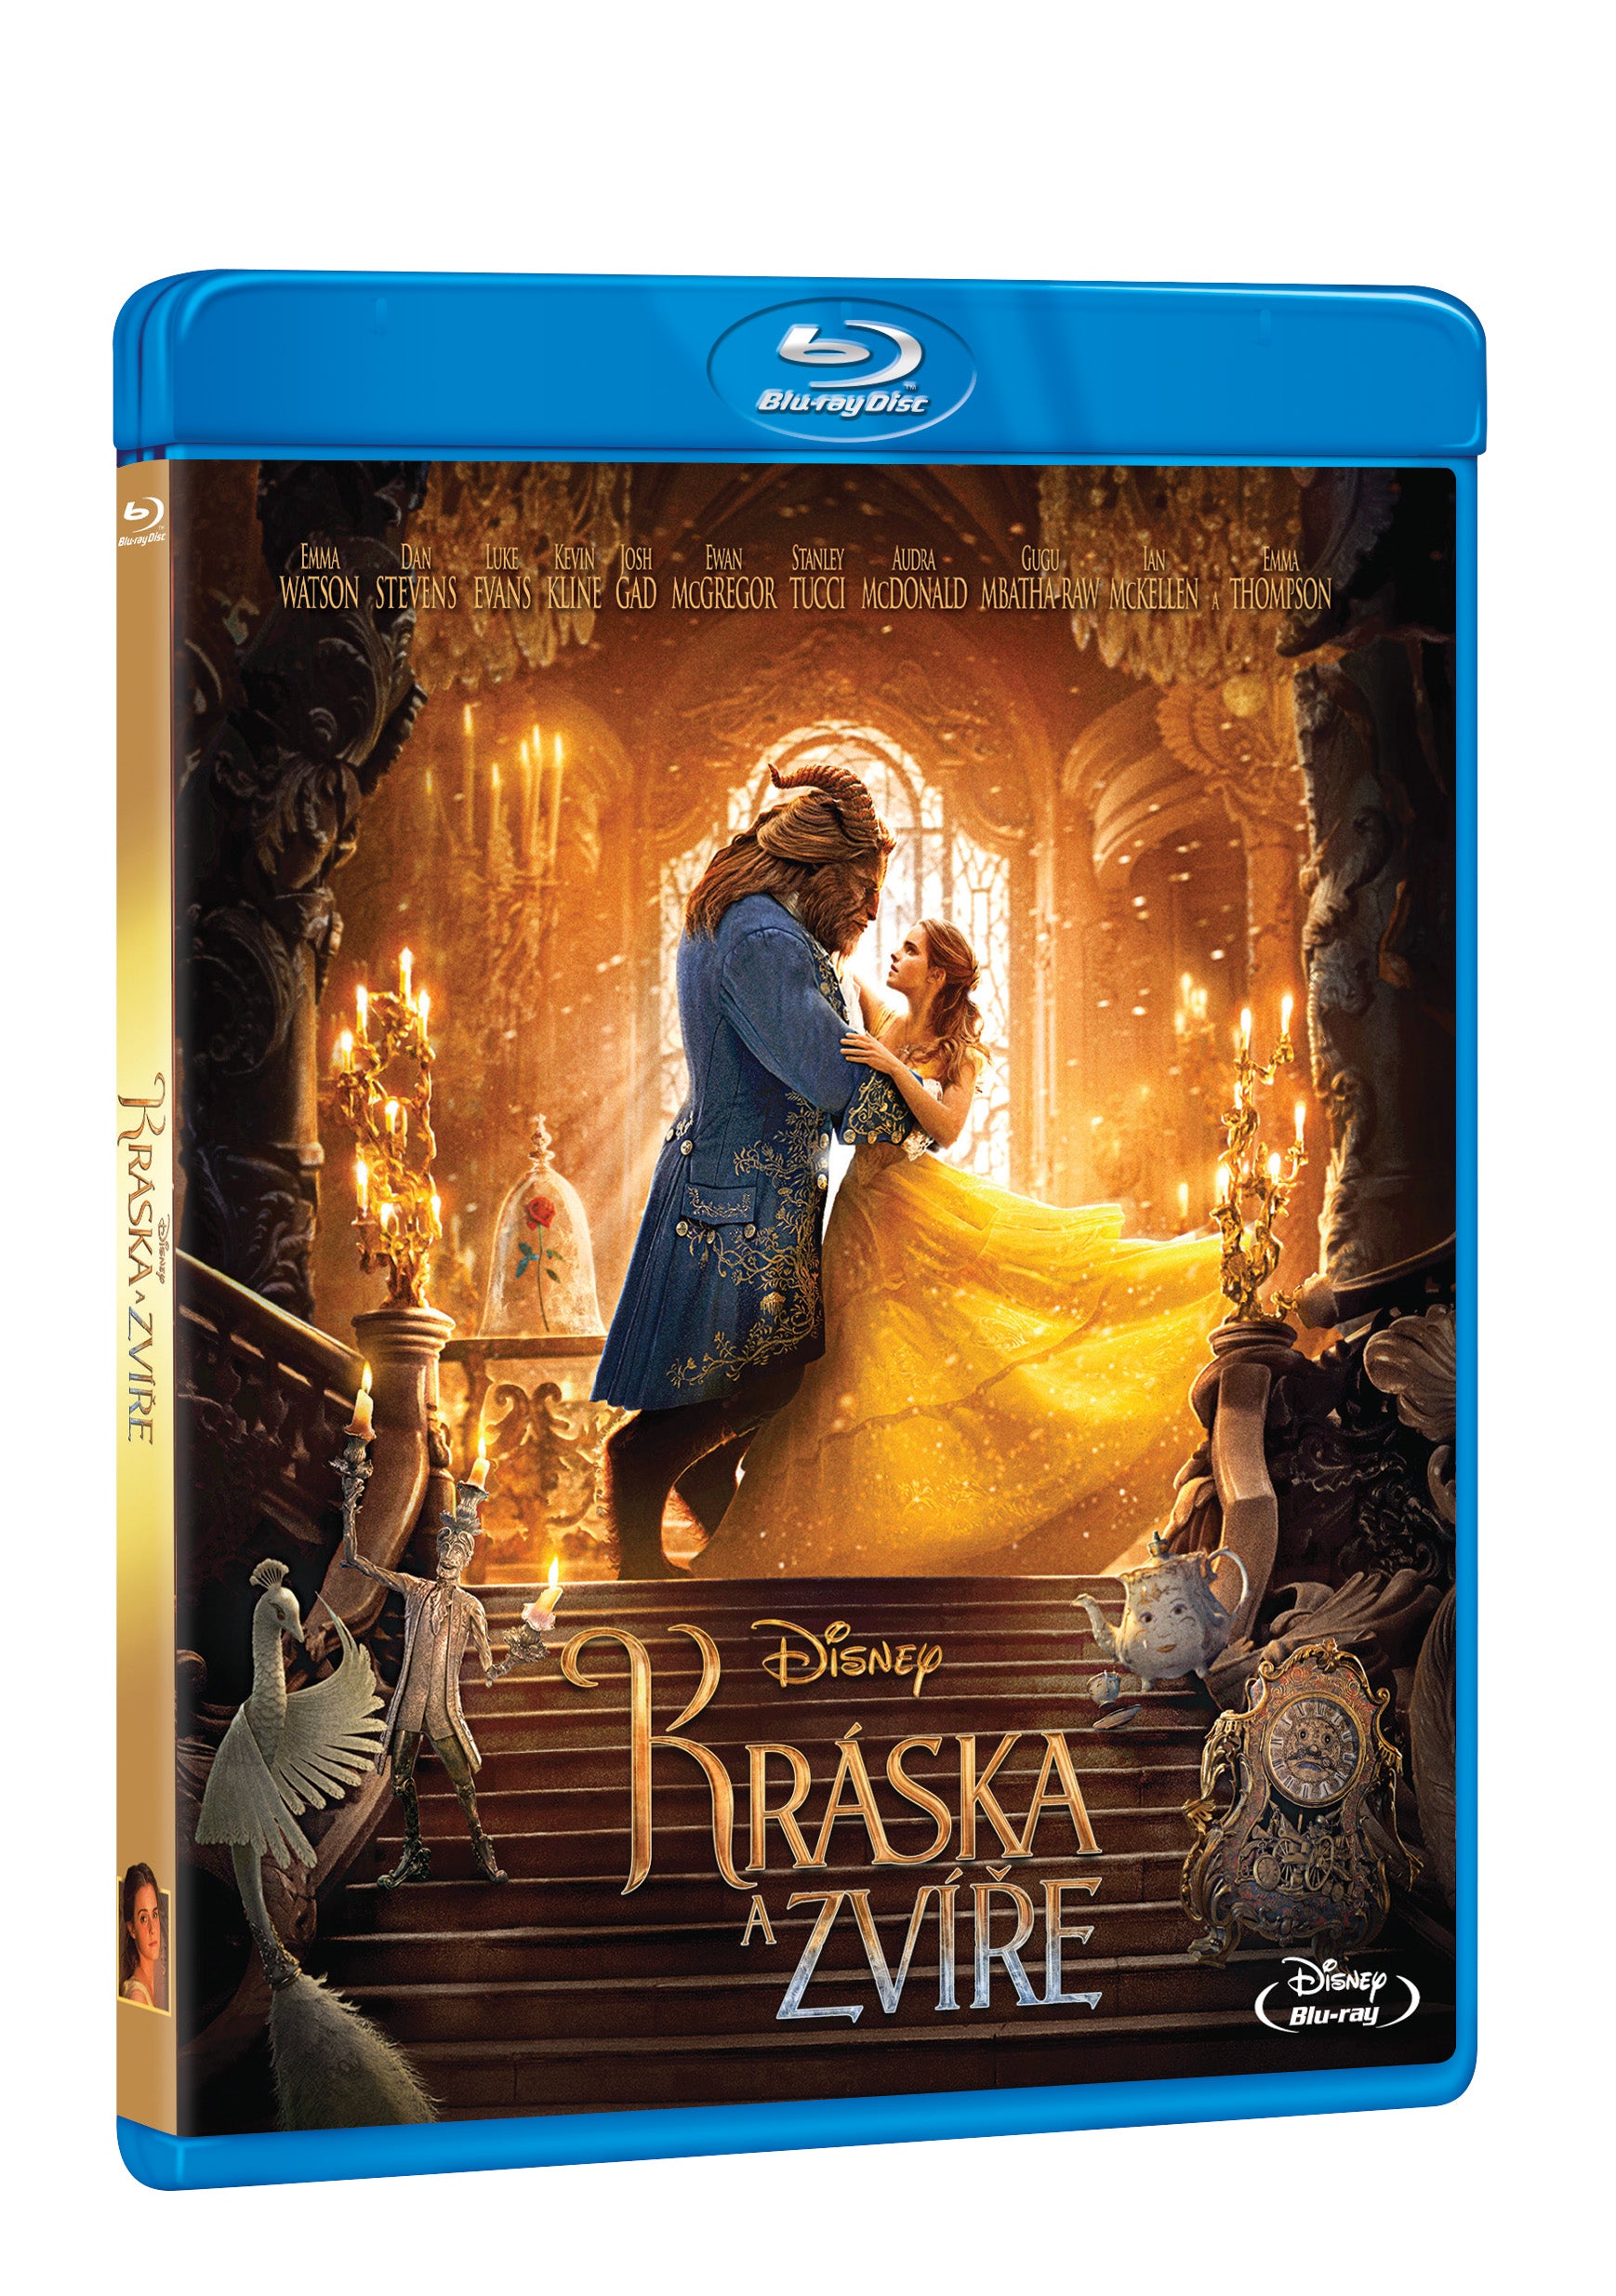 Kraska a zvire BD / Beauty and the Beast - Czech version